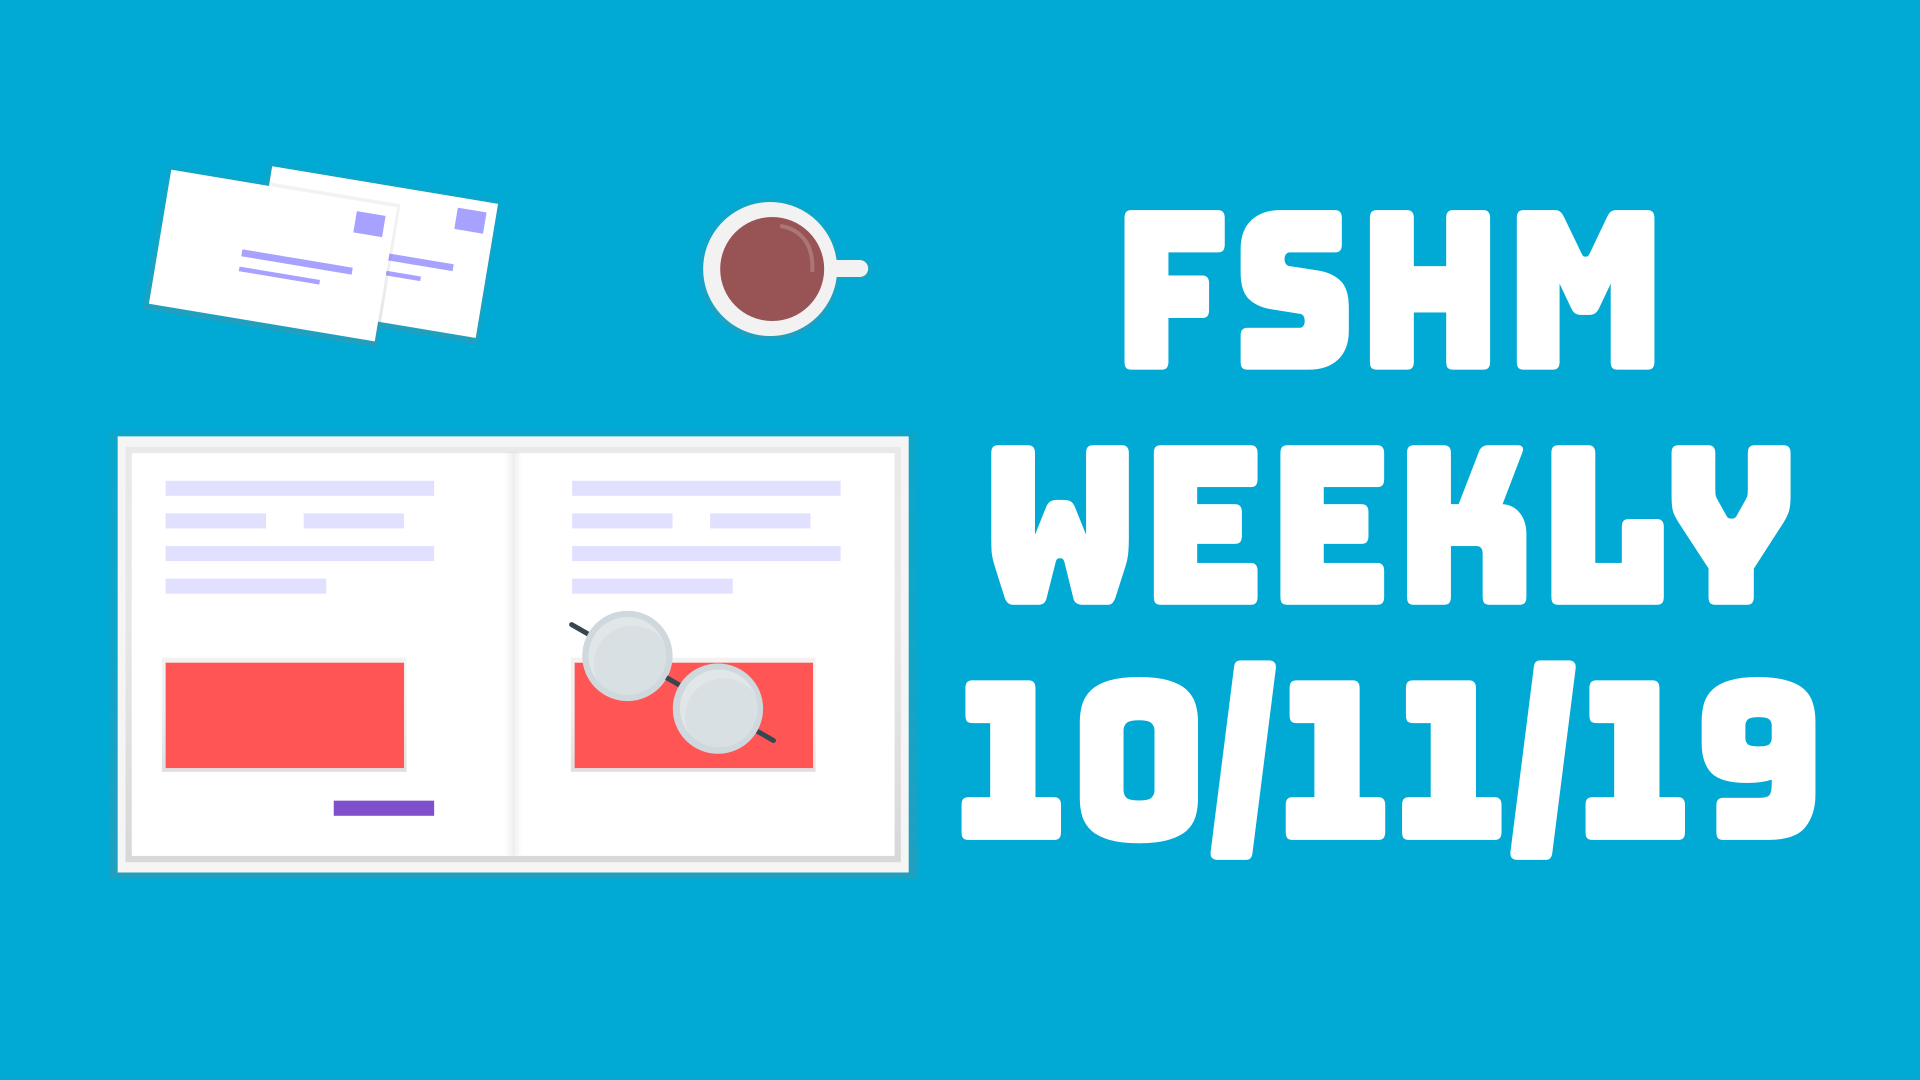 FSHM Weekly - 10/11/19